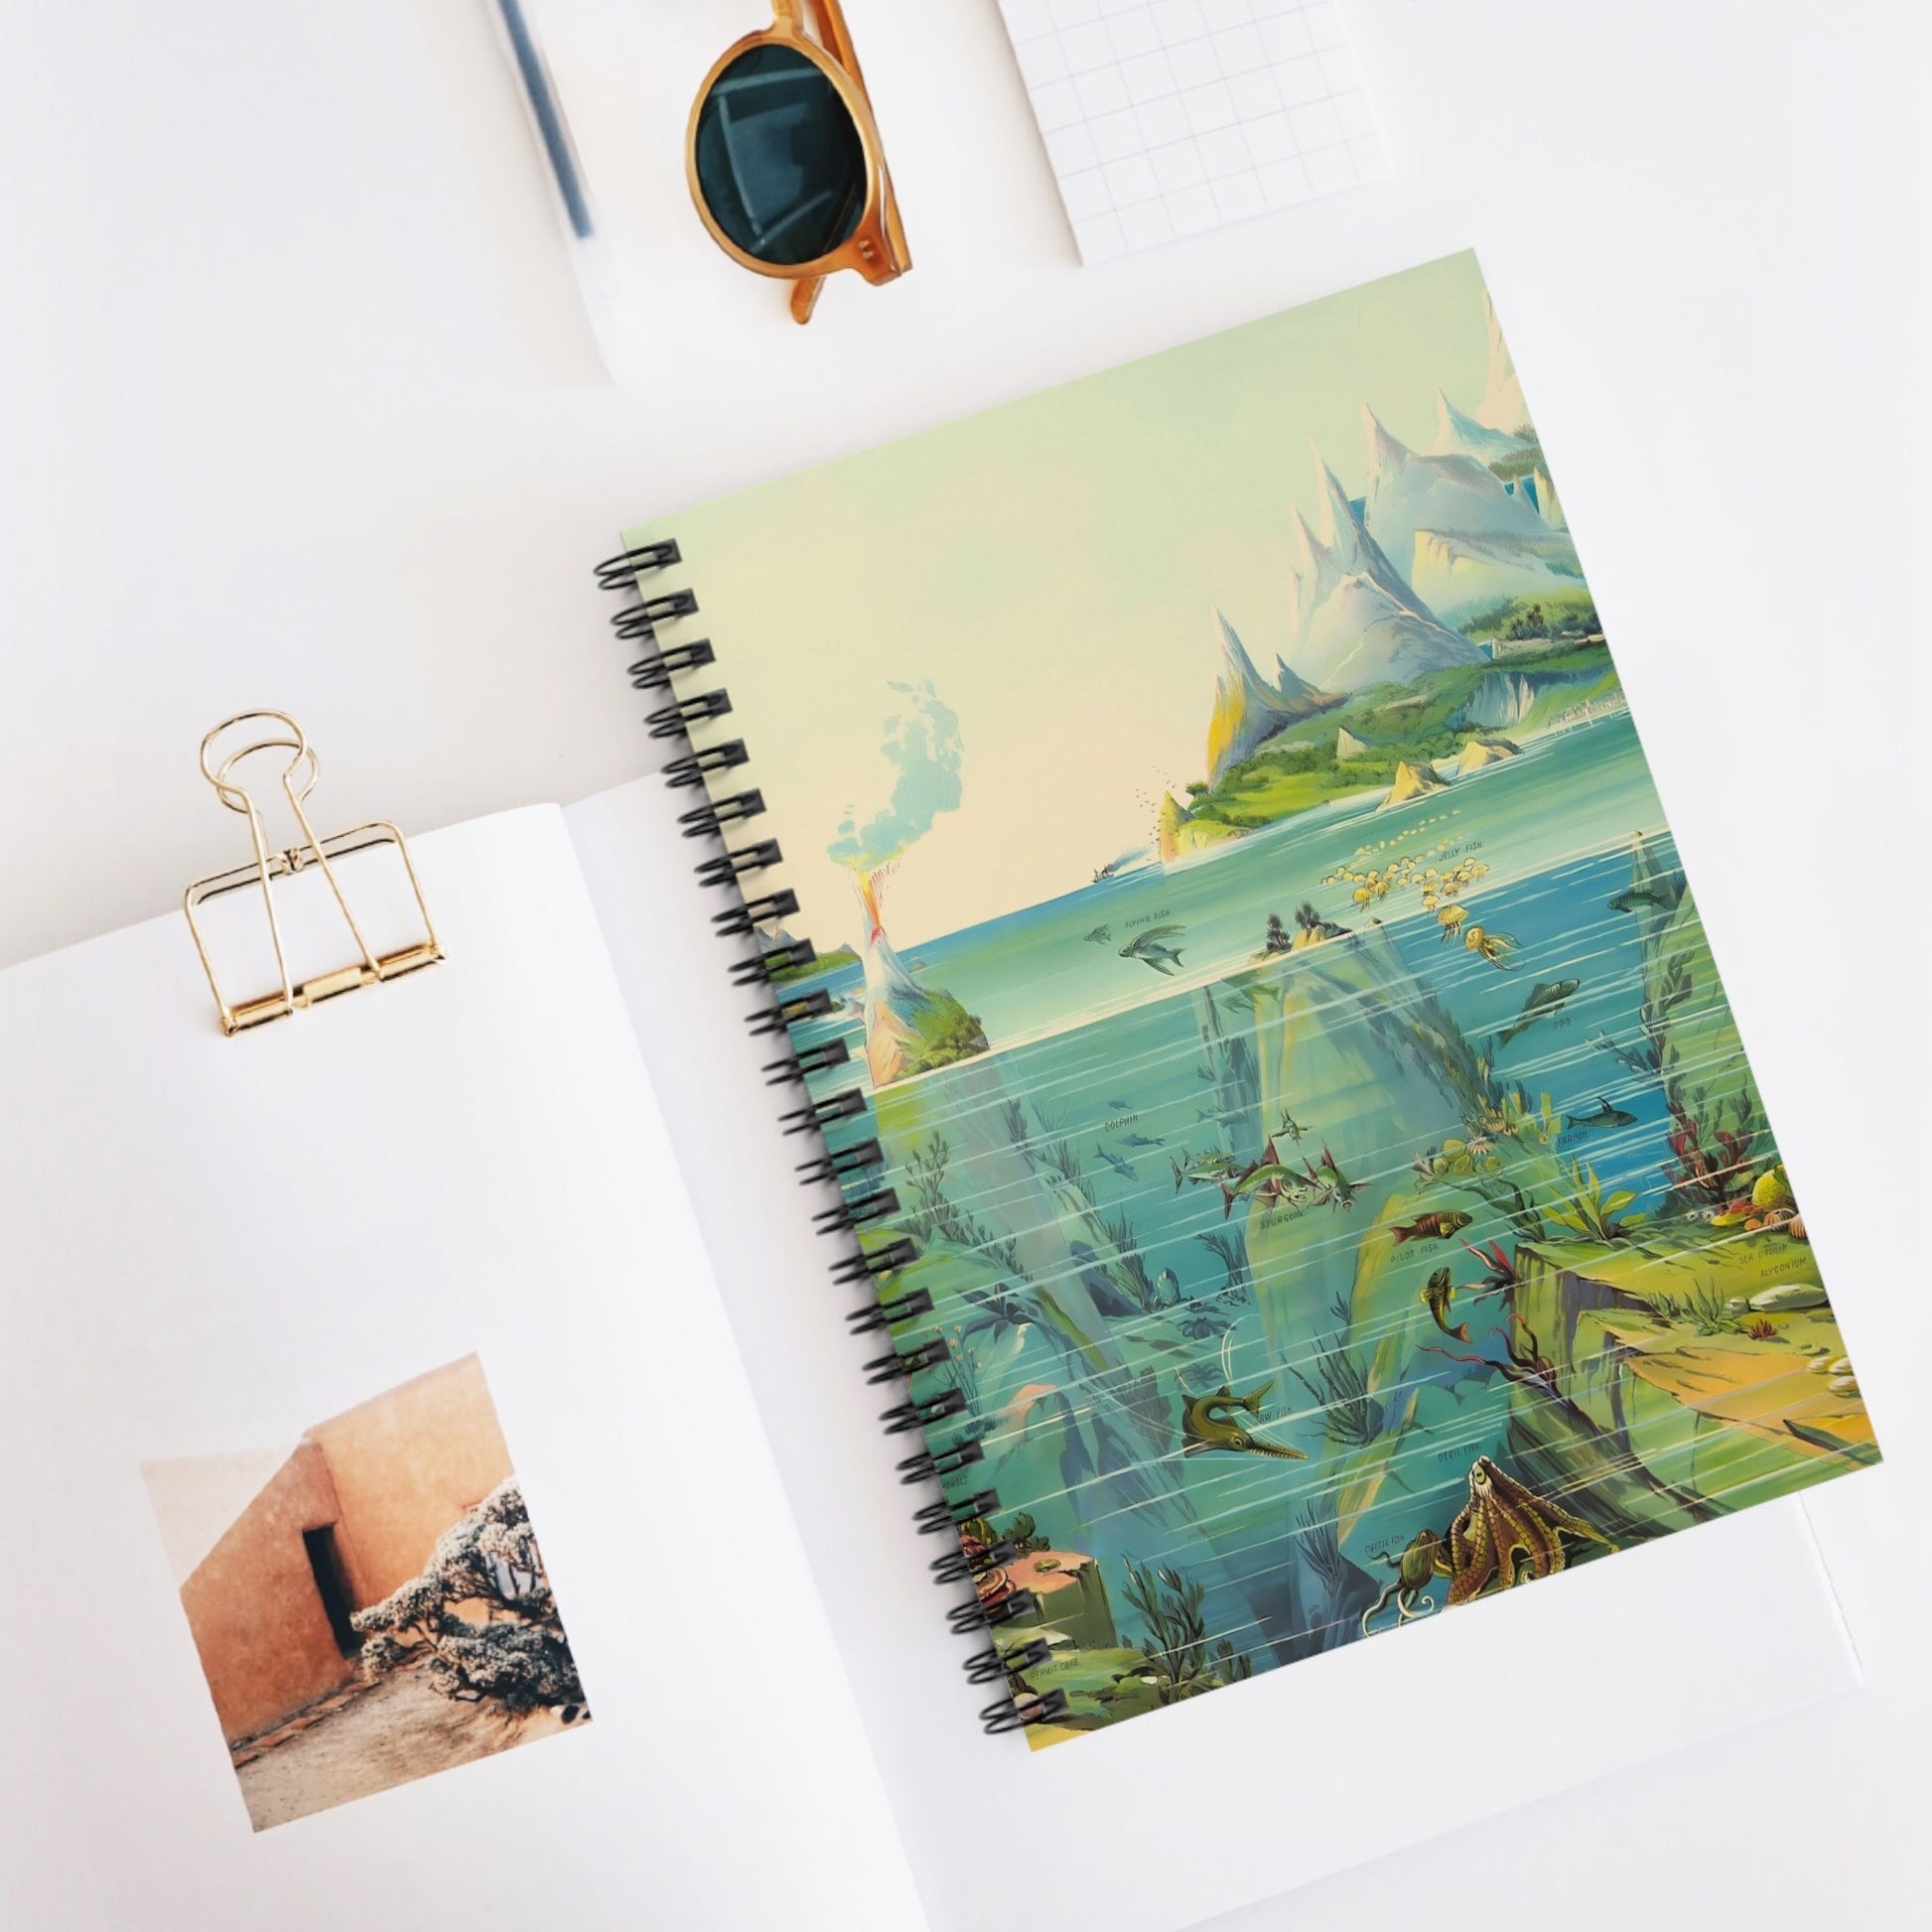 Ocean Spiral Notebook Displayed on Desk